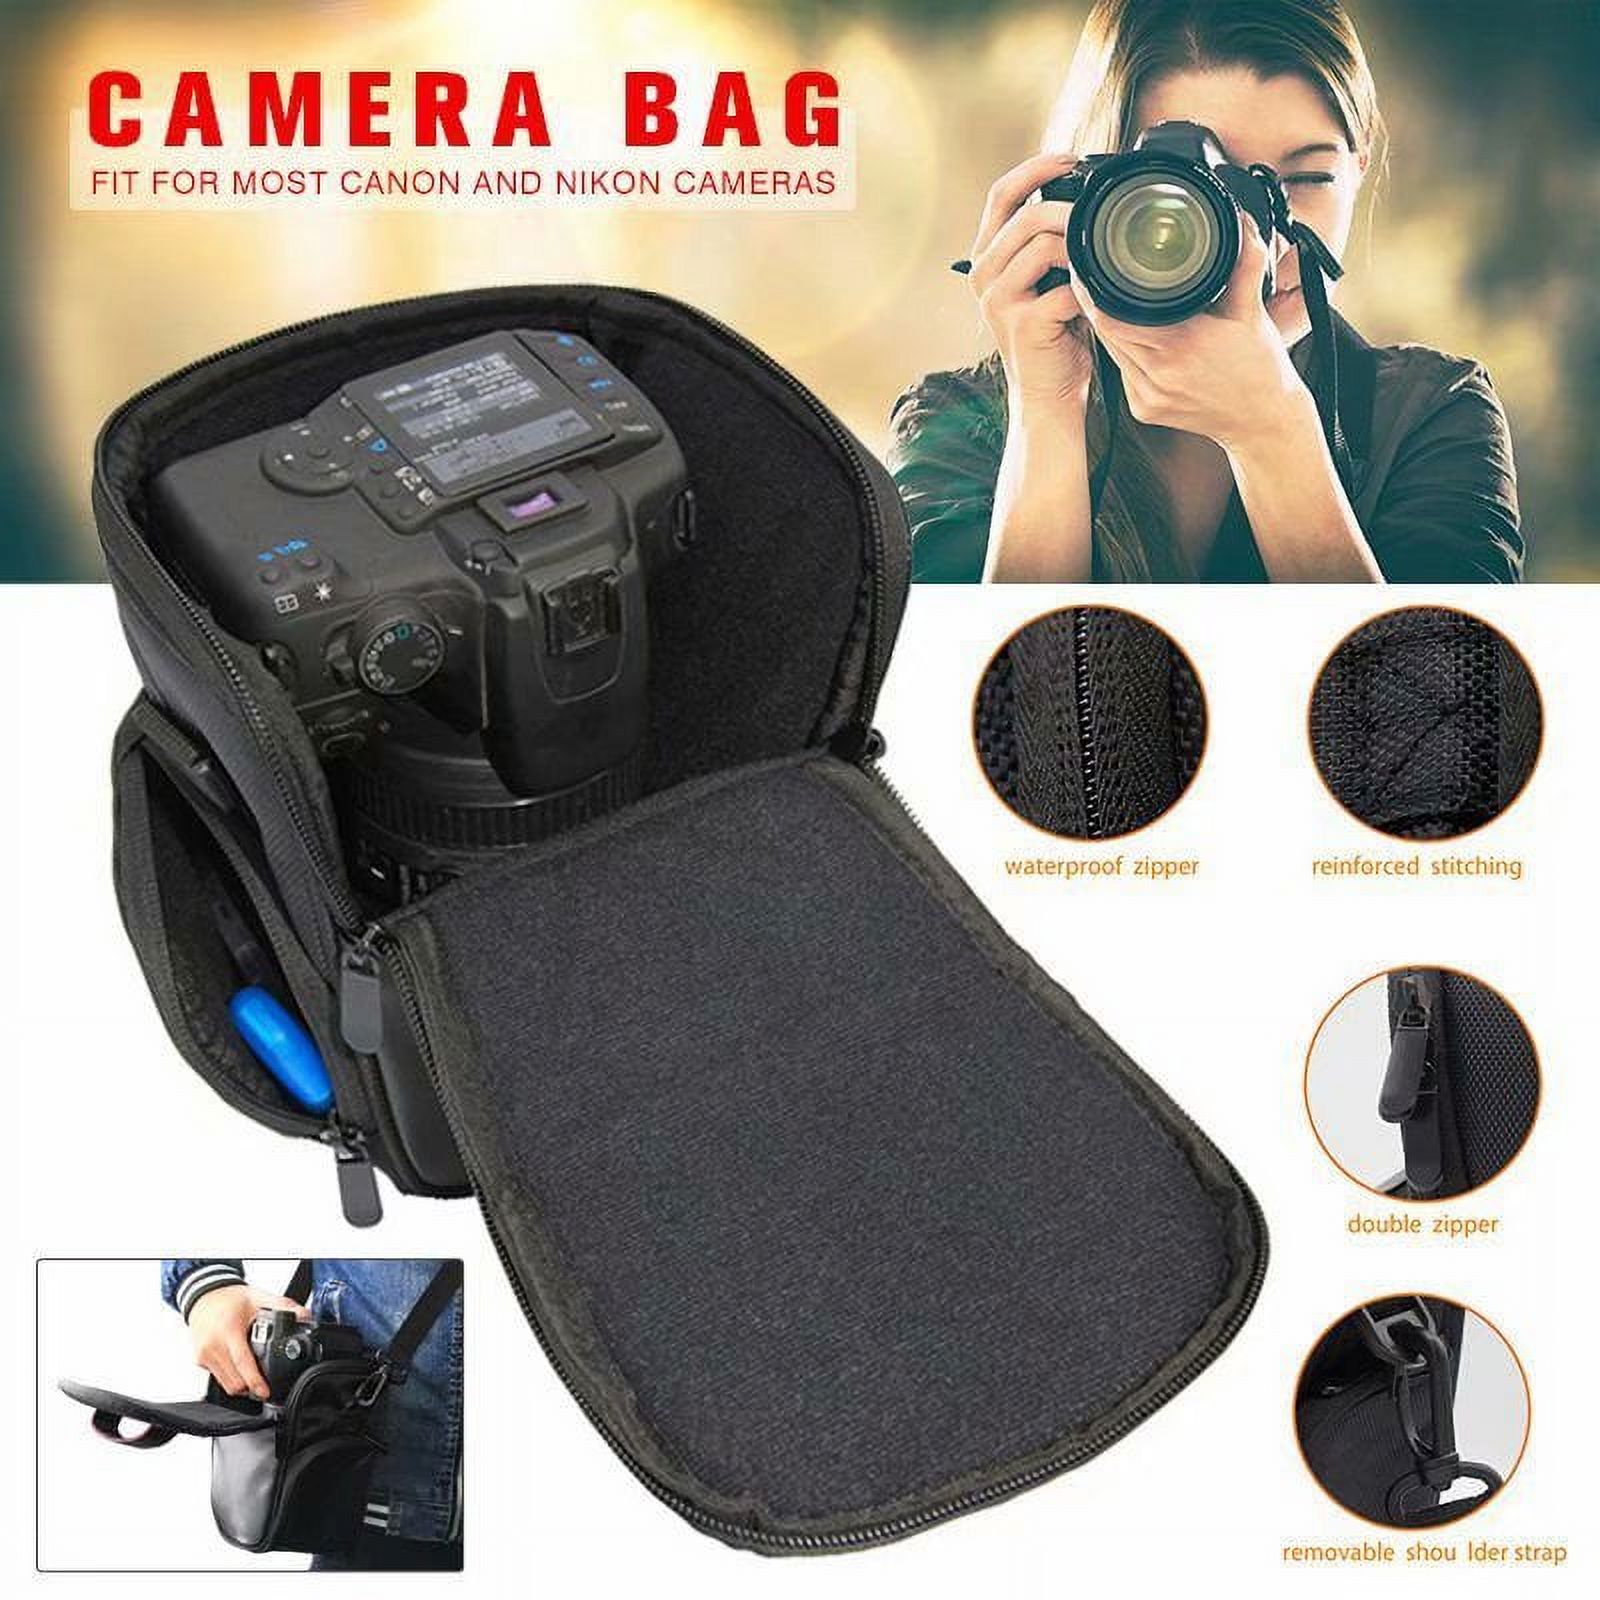 Waterproof Shockproof DSLR SLR Camera Bag Shoulder Case for Canon EOS Nikon - image 1 of 8